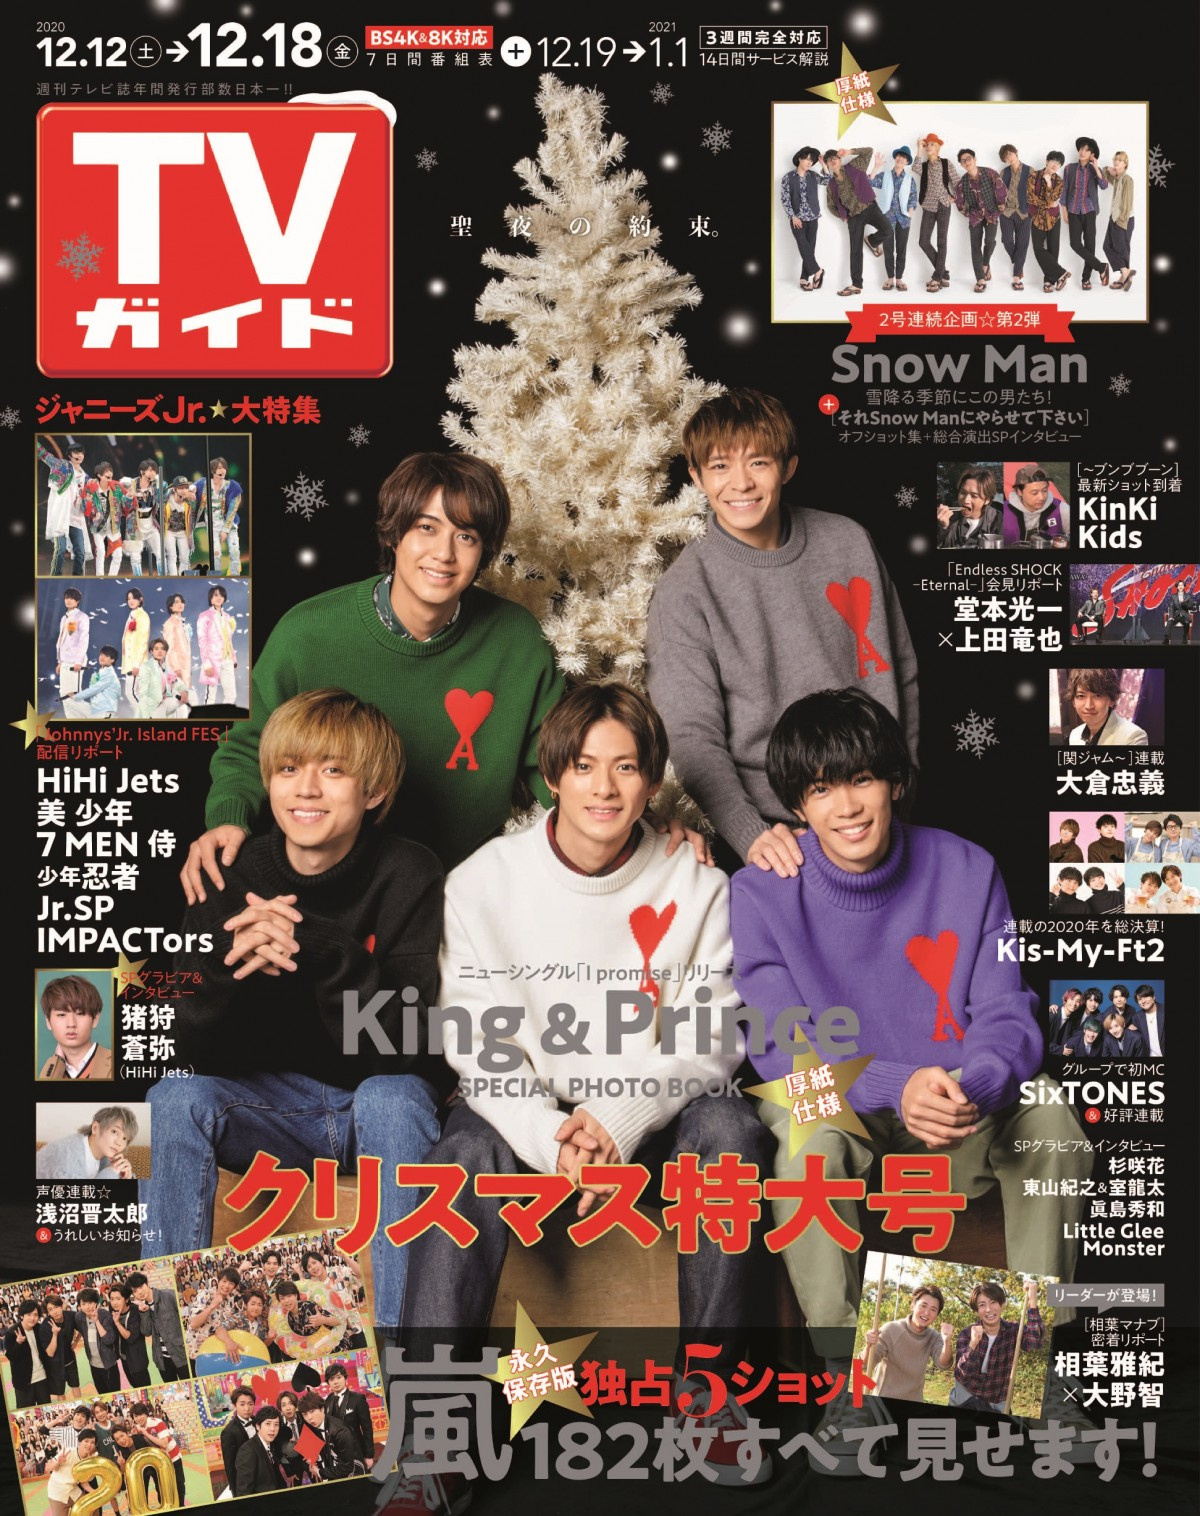 King Prince 色違いニットで あったかクリスマス Tvガイド 表紙 Spグラビアに登場 Oricon News